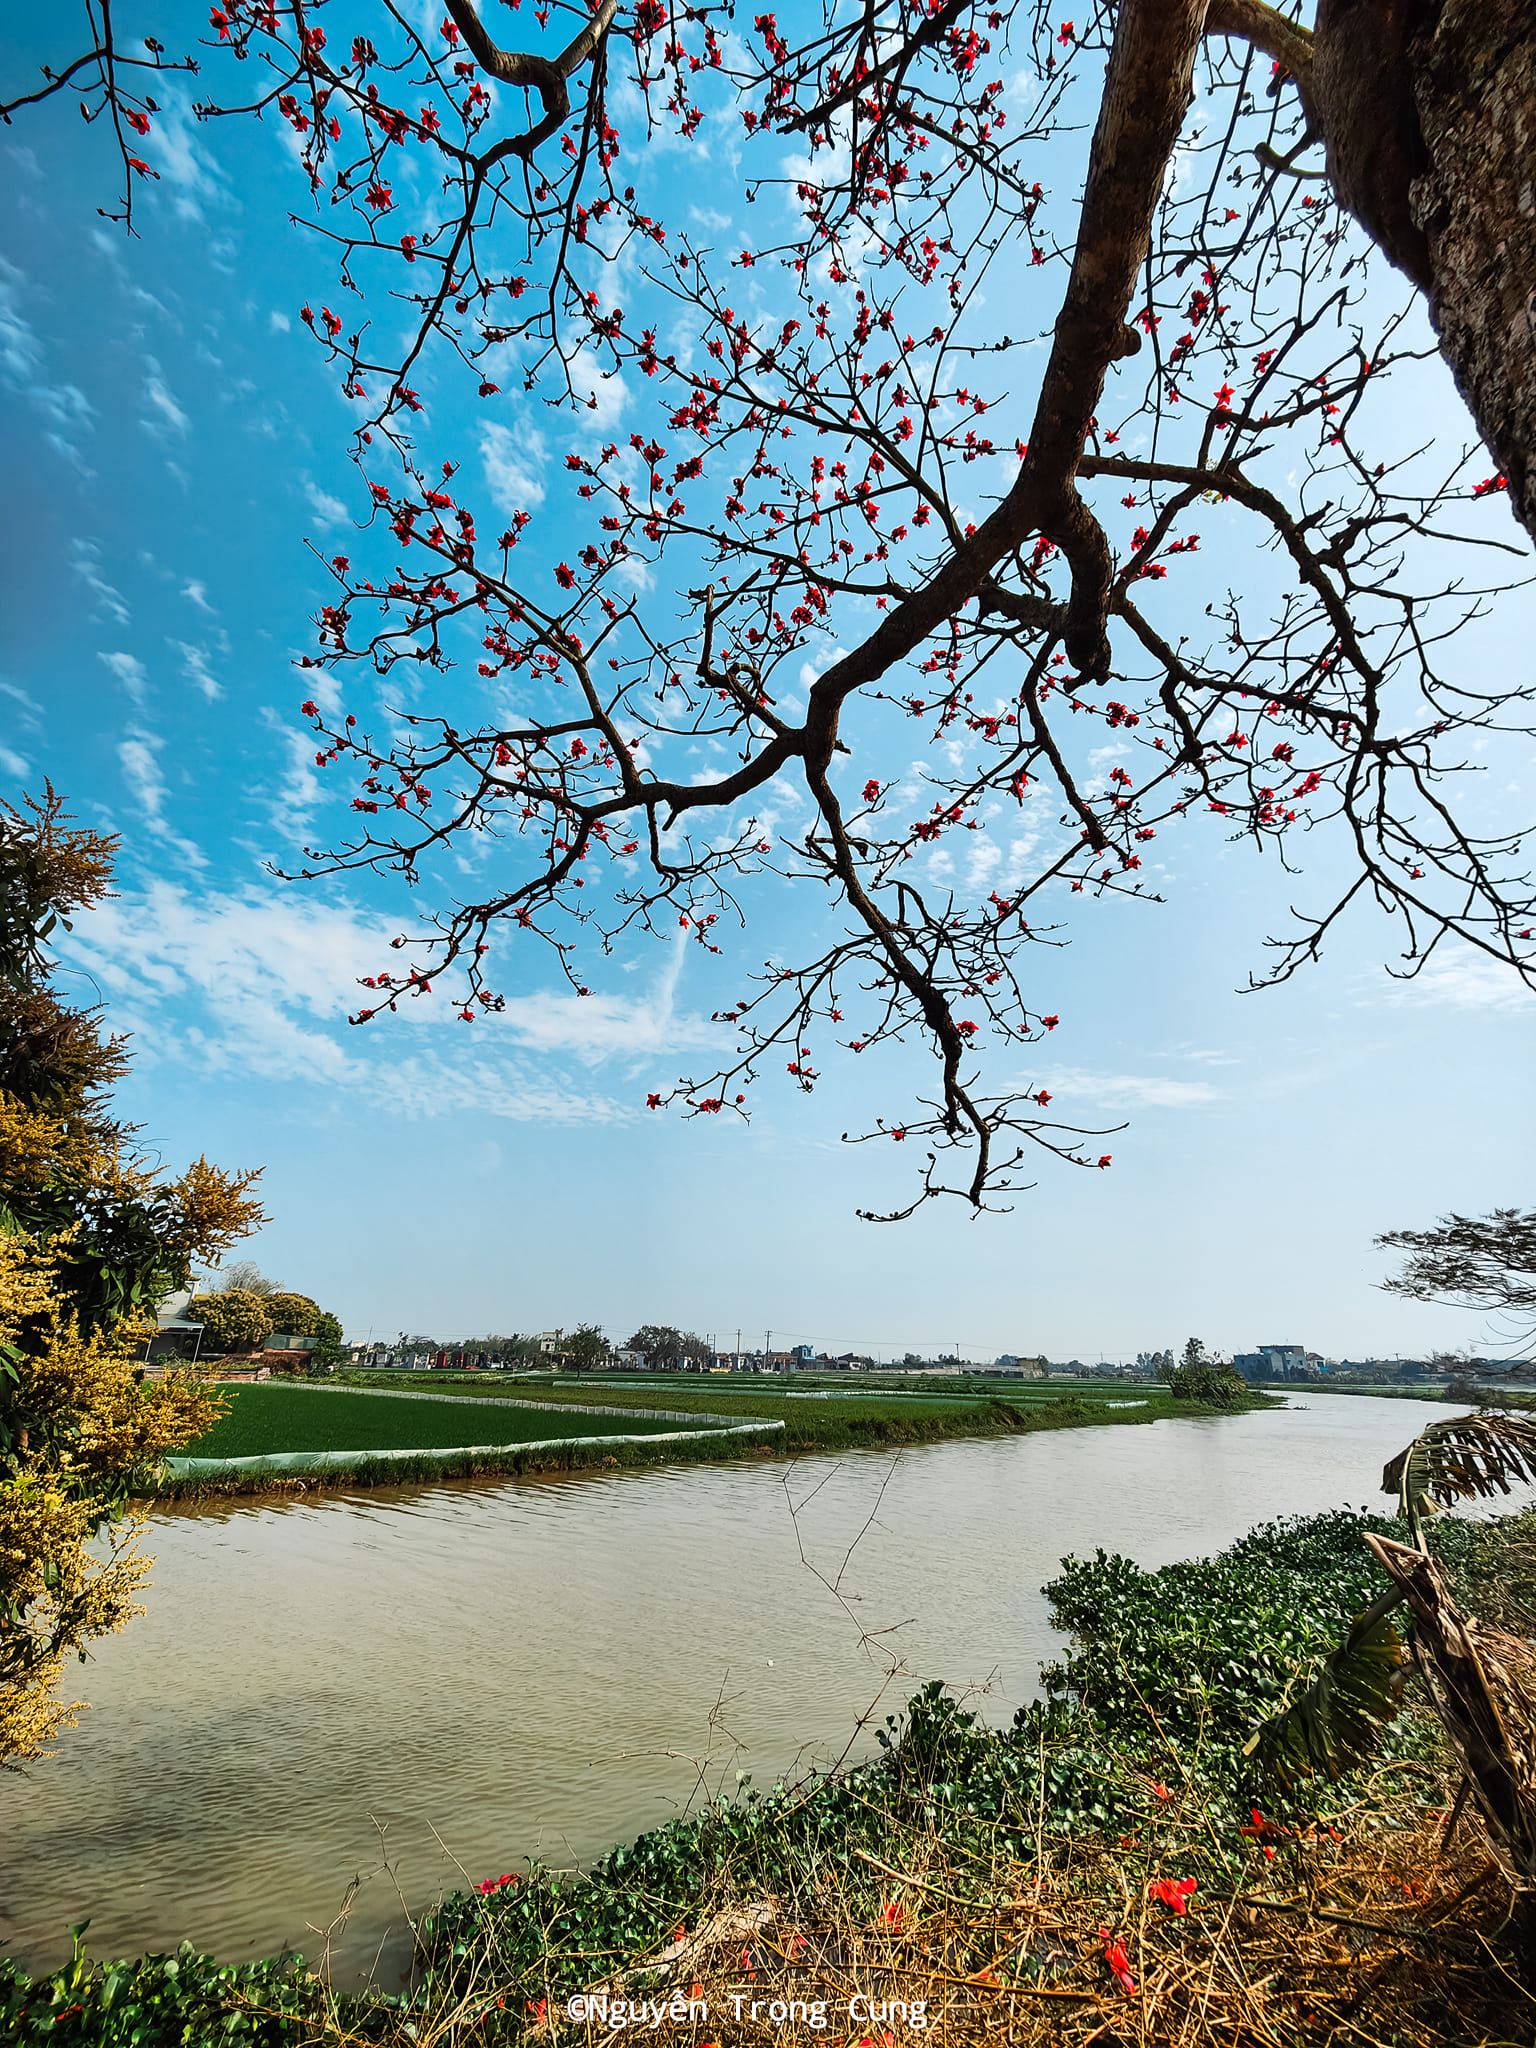 Ngẩn ngơ trước vẻ đẹp thơ mộng của mùa hoa gạo bung nở tại Thái Bình